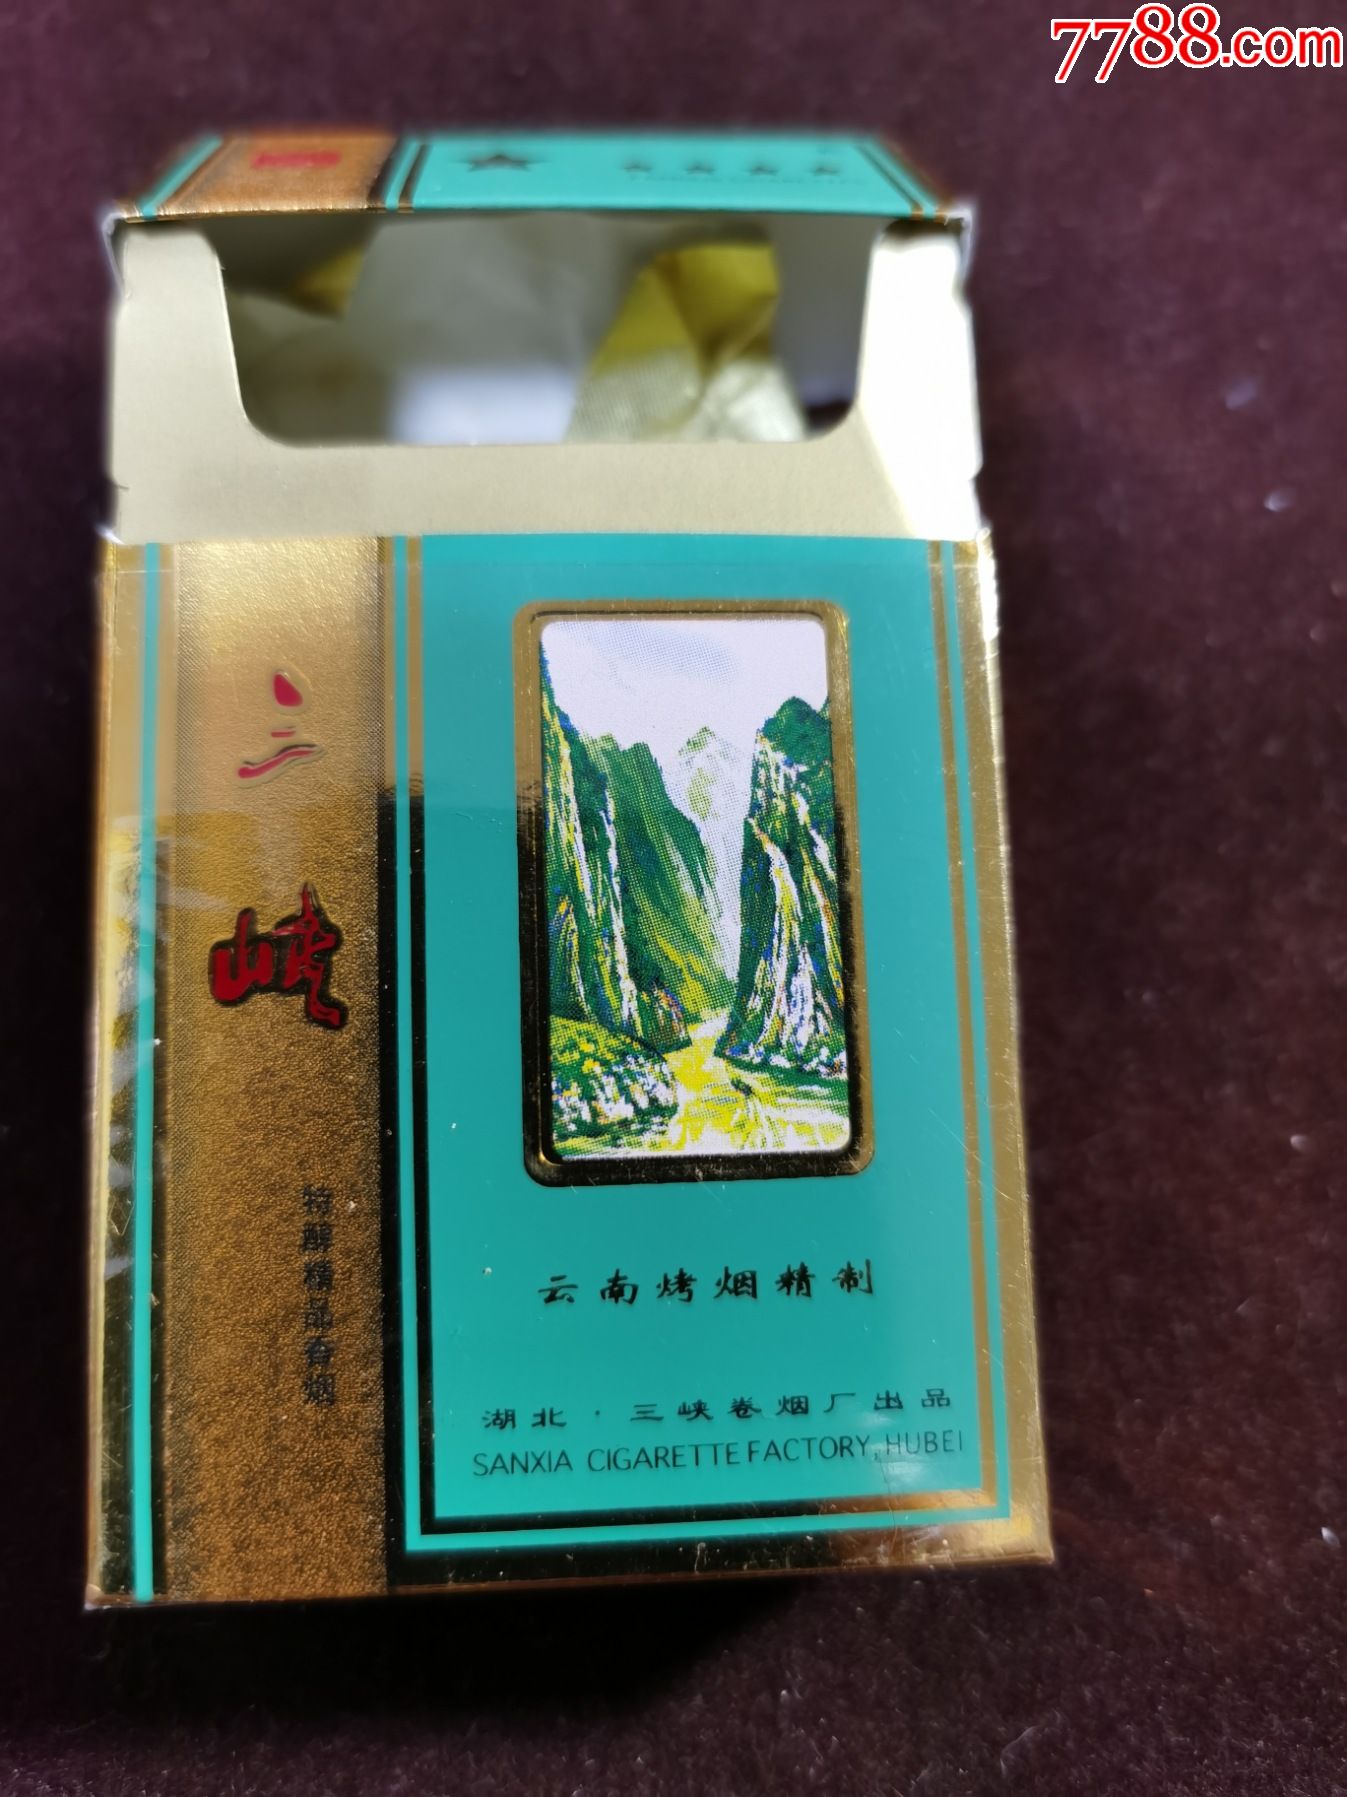 3d【三峡】;多图;湖北三峡卷烟厂